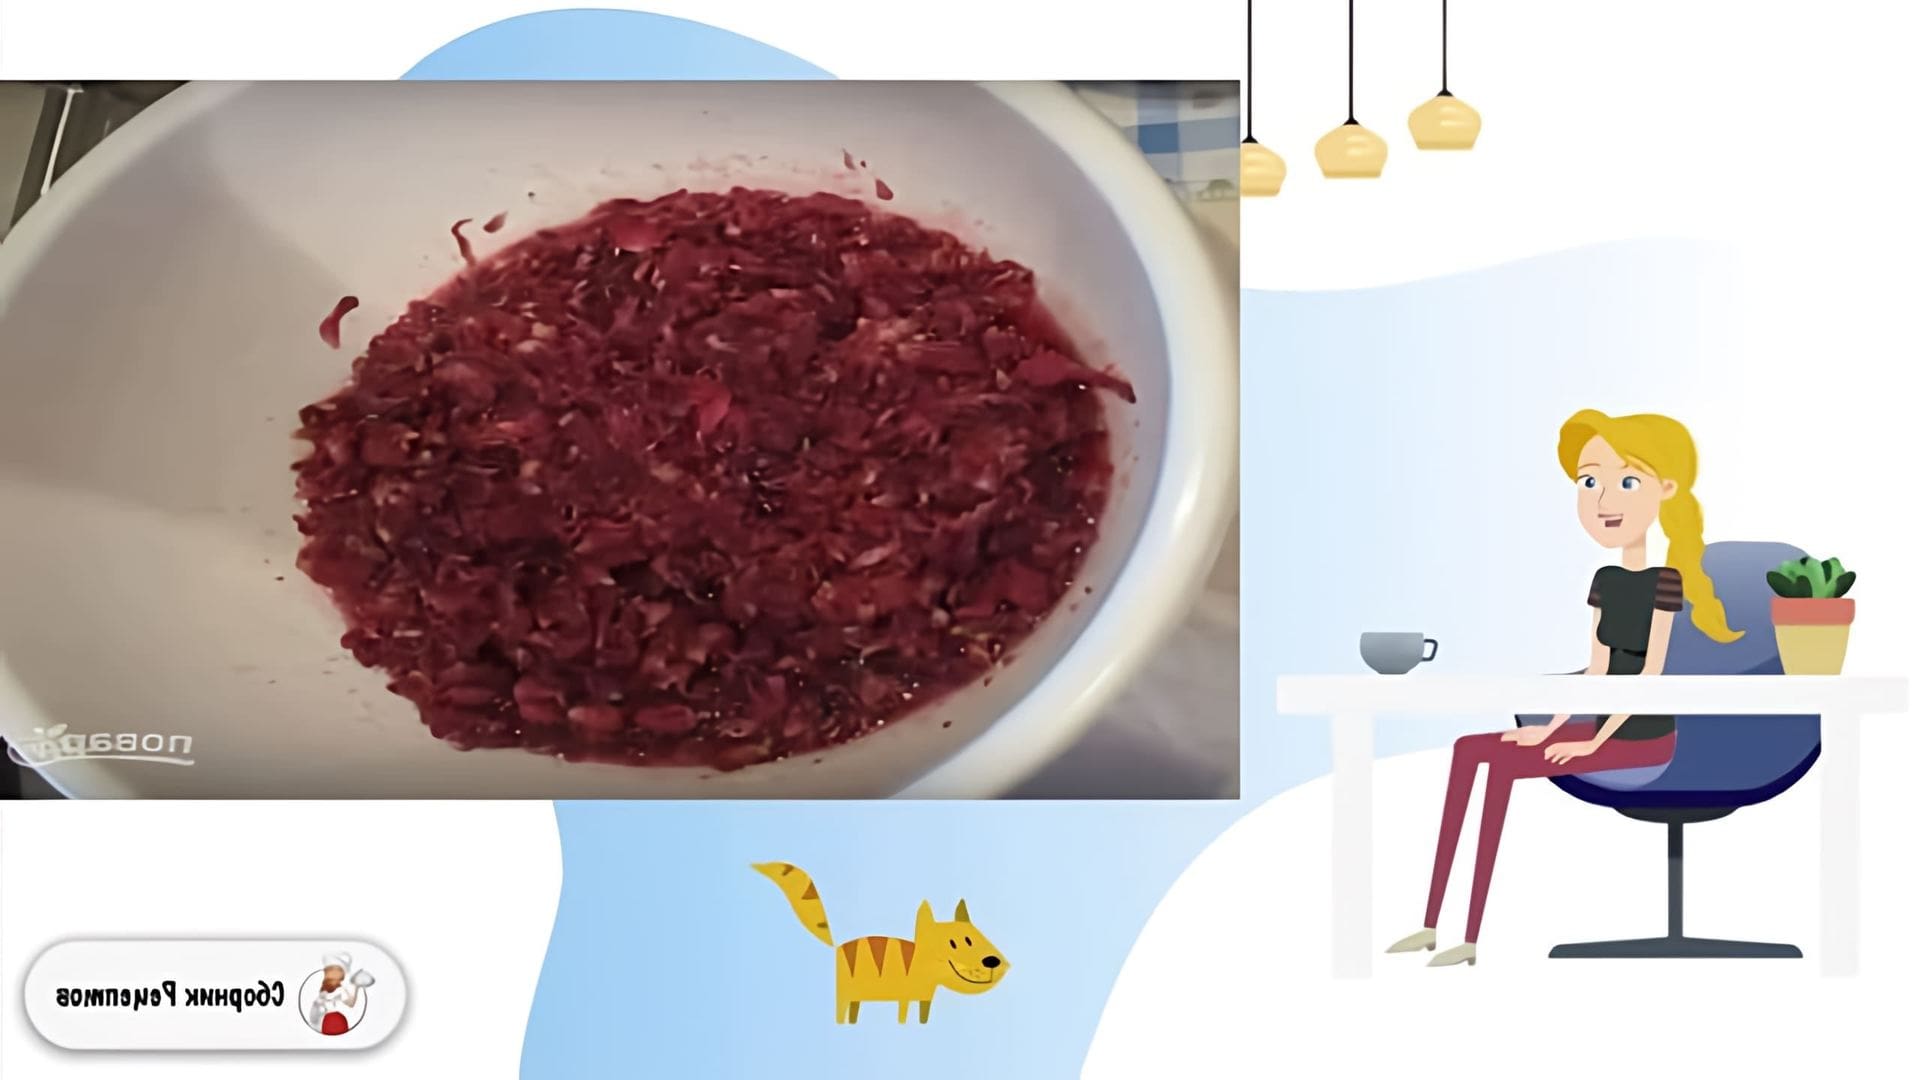 В этом видео демонстрируется рецепт приготовления варенья из розовых лепестков